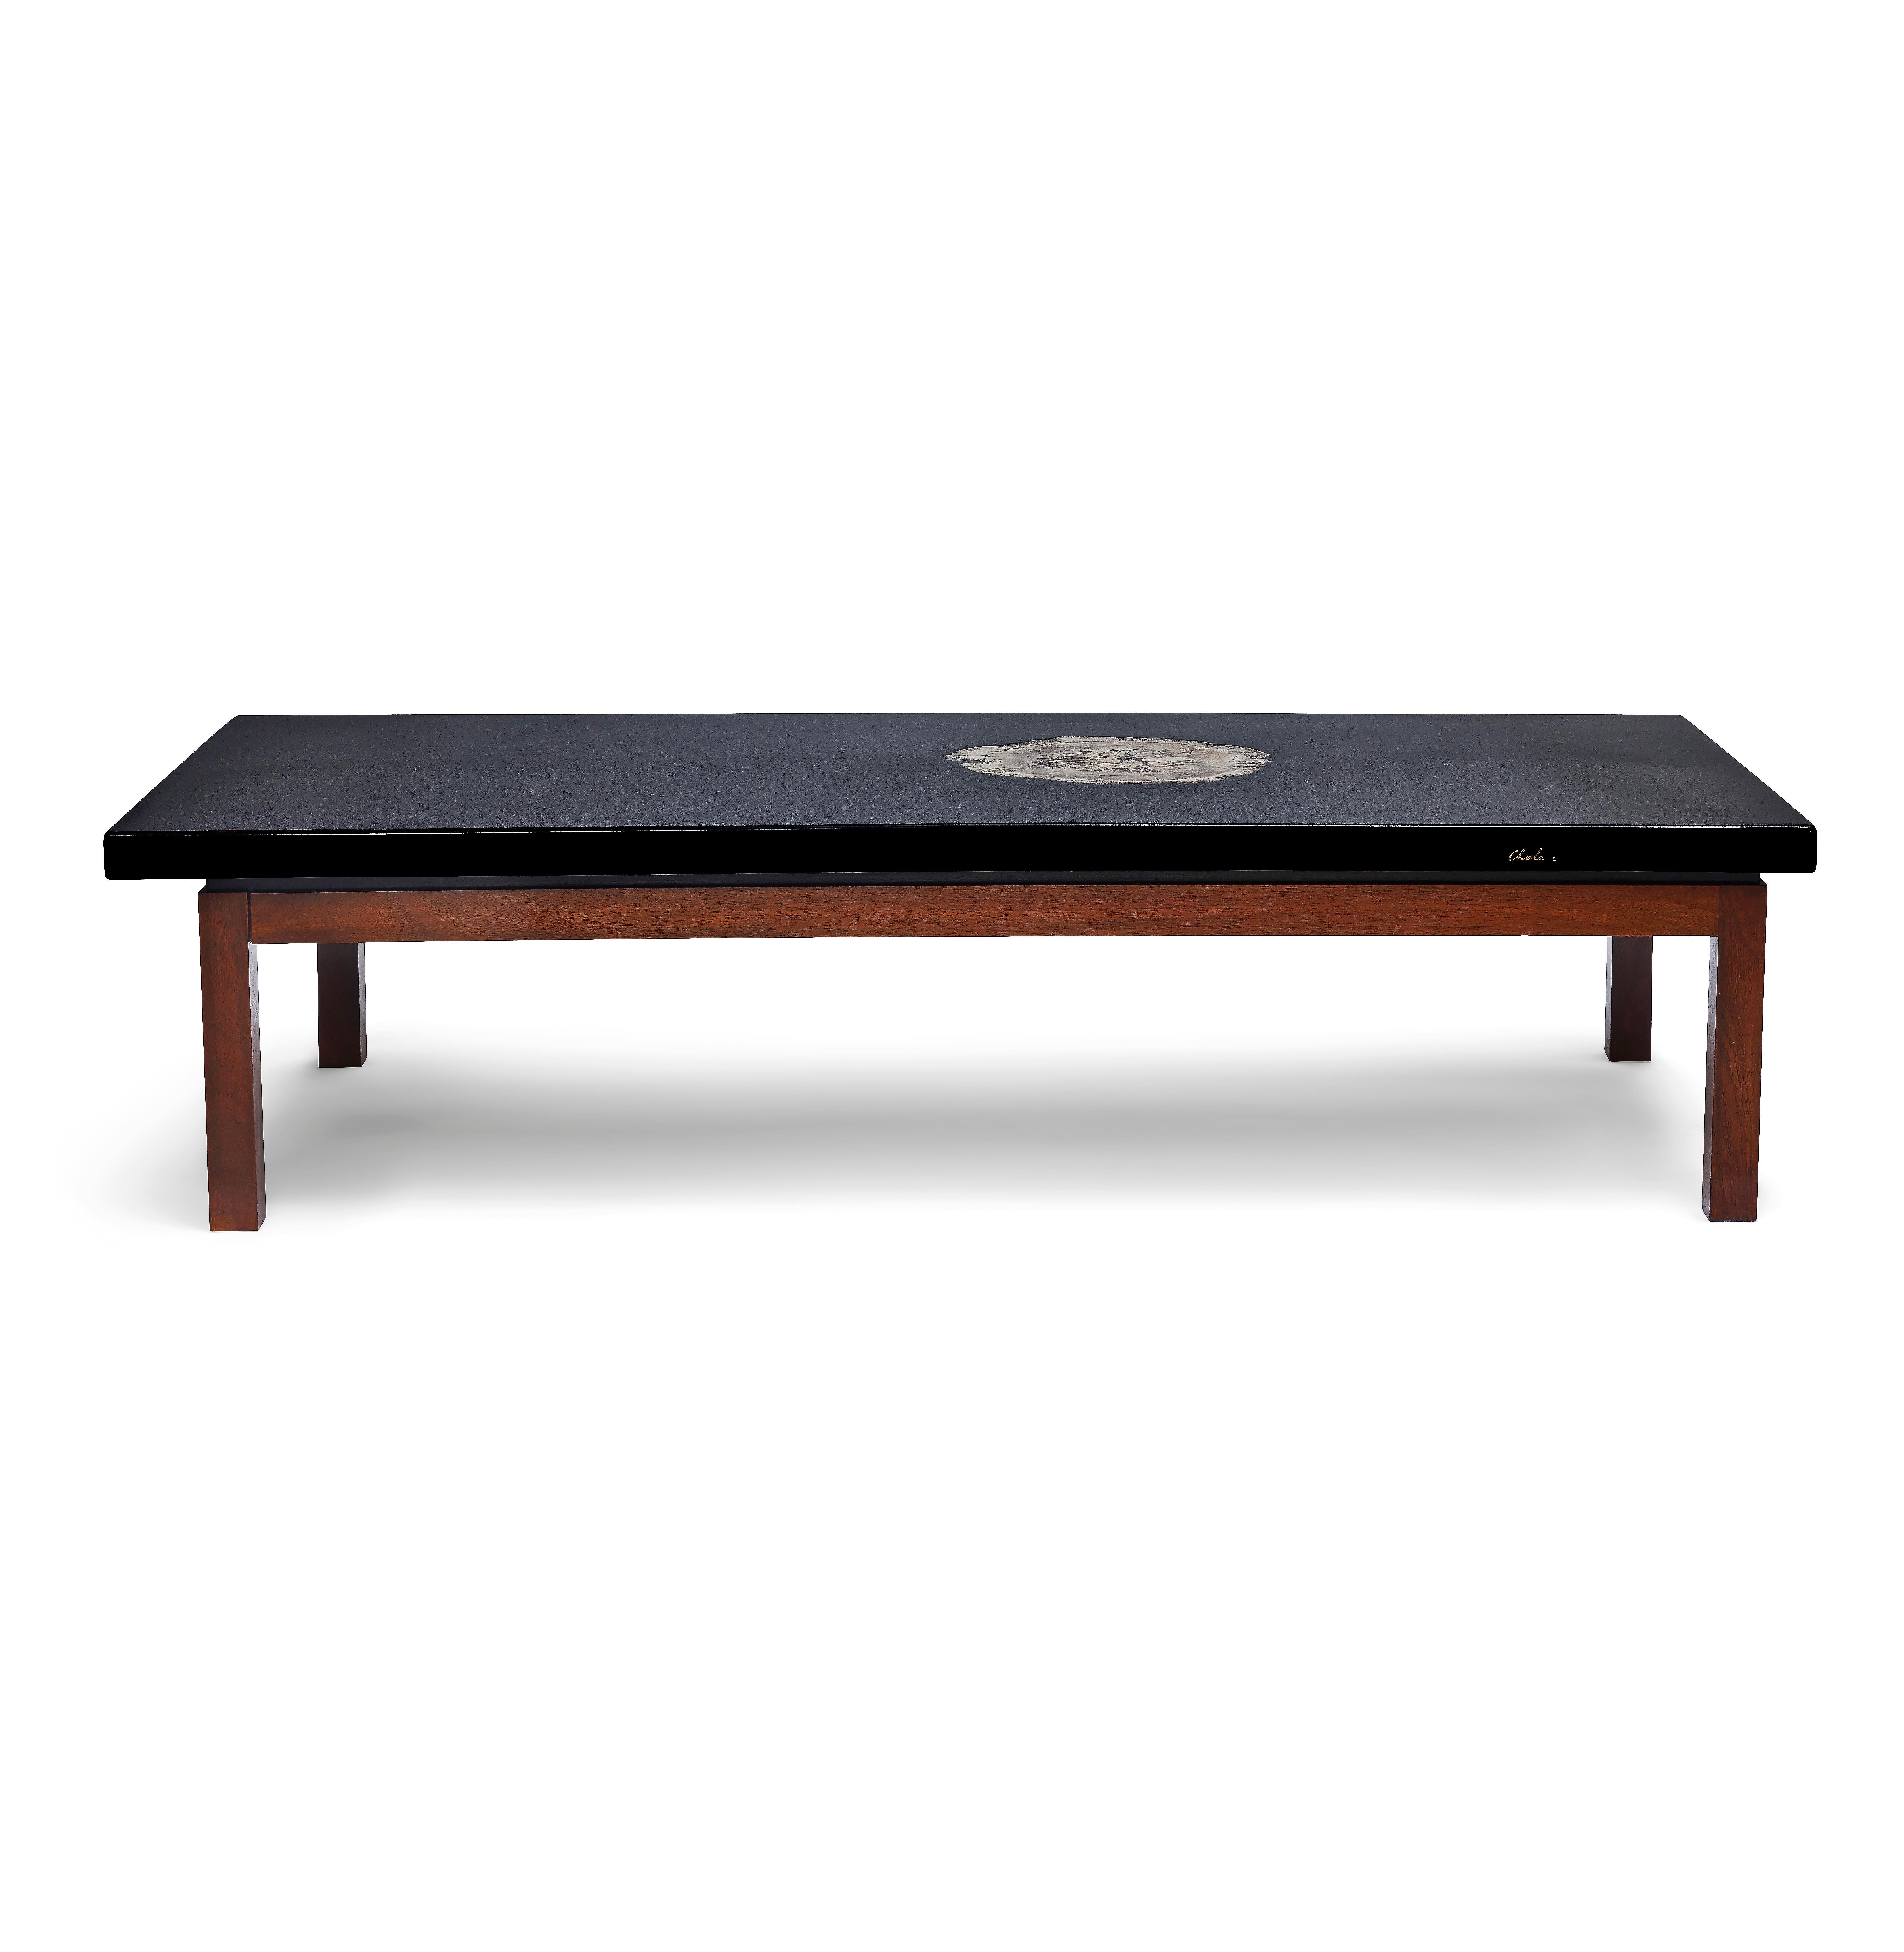 Table basse en résine noire reposant sur une base en bois avec agate insérée, conçue par Ado Chale. Signé 